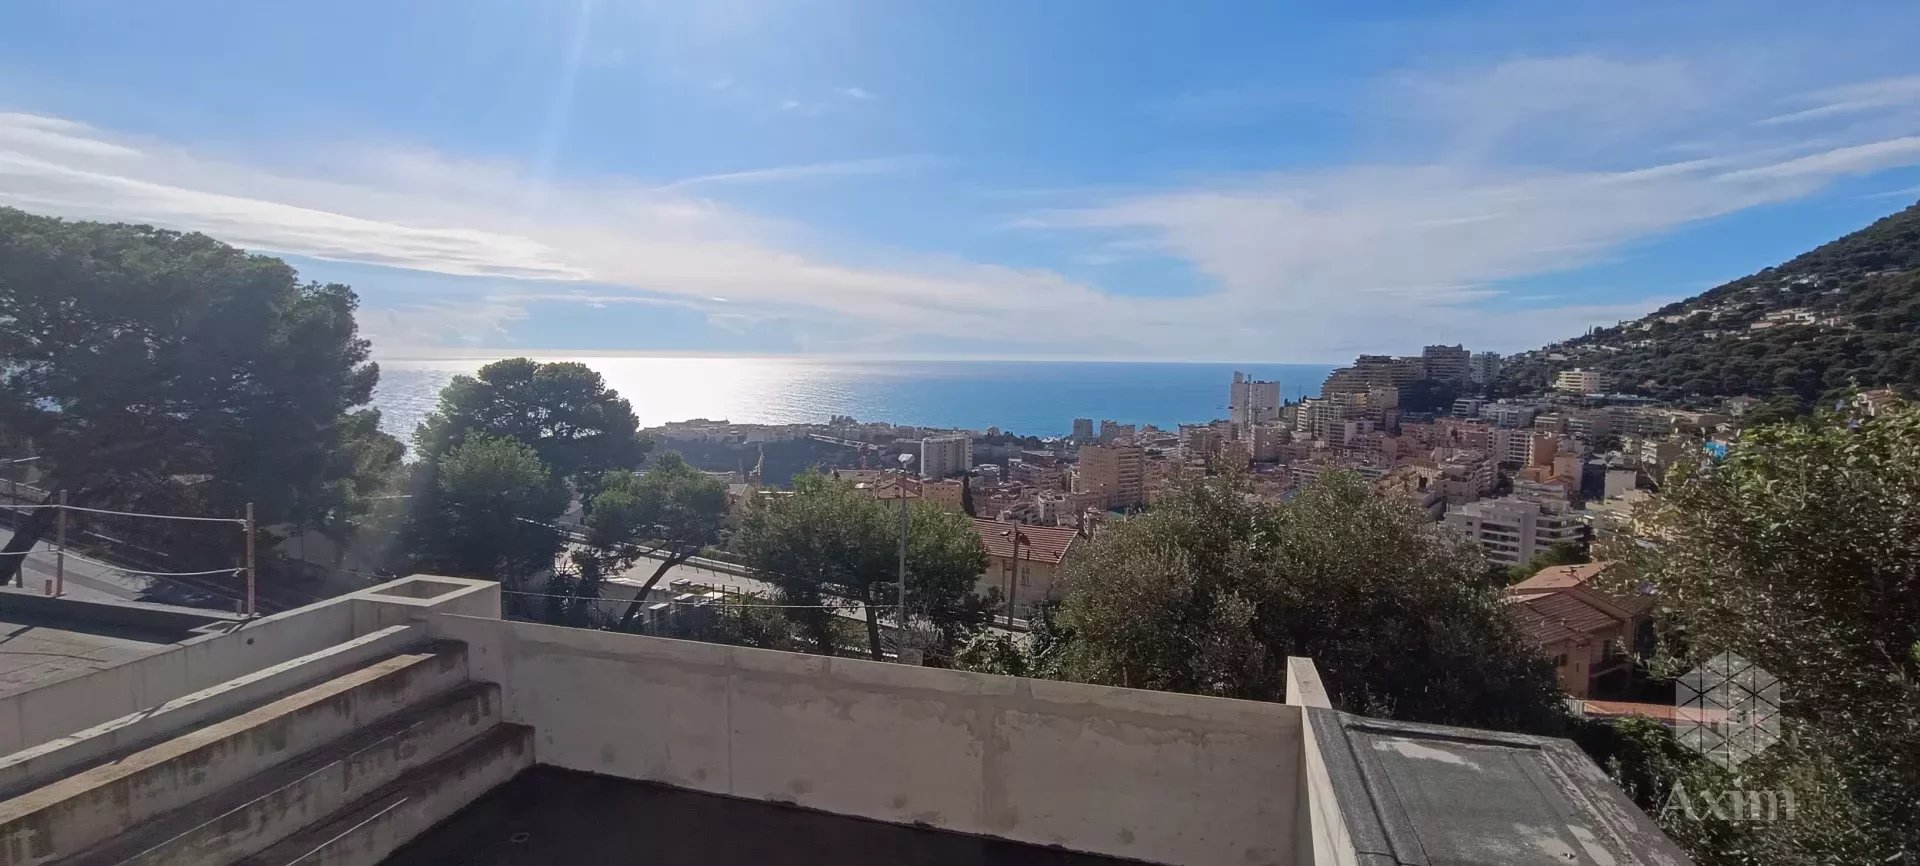 Villa contemporanea con vista panoramica sul mare